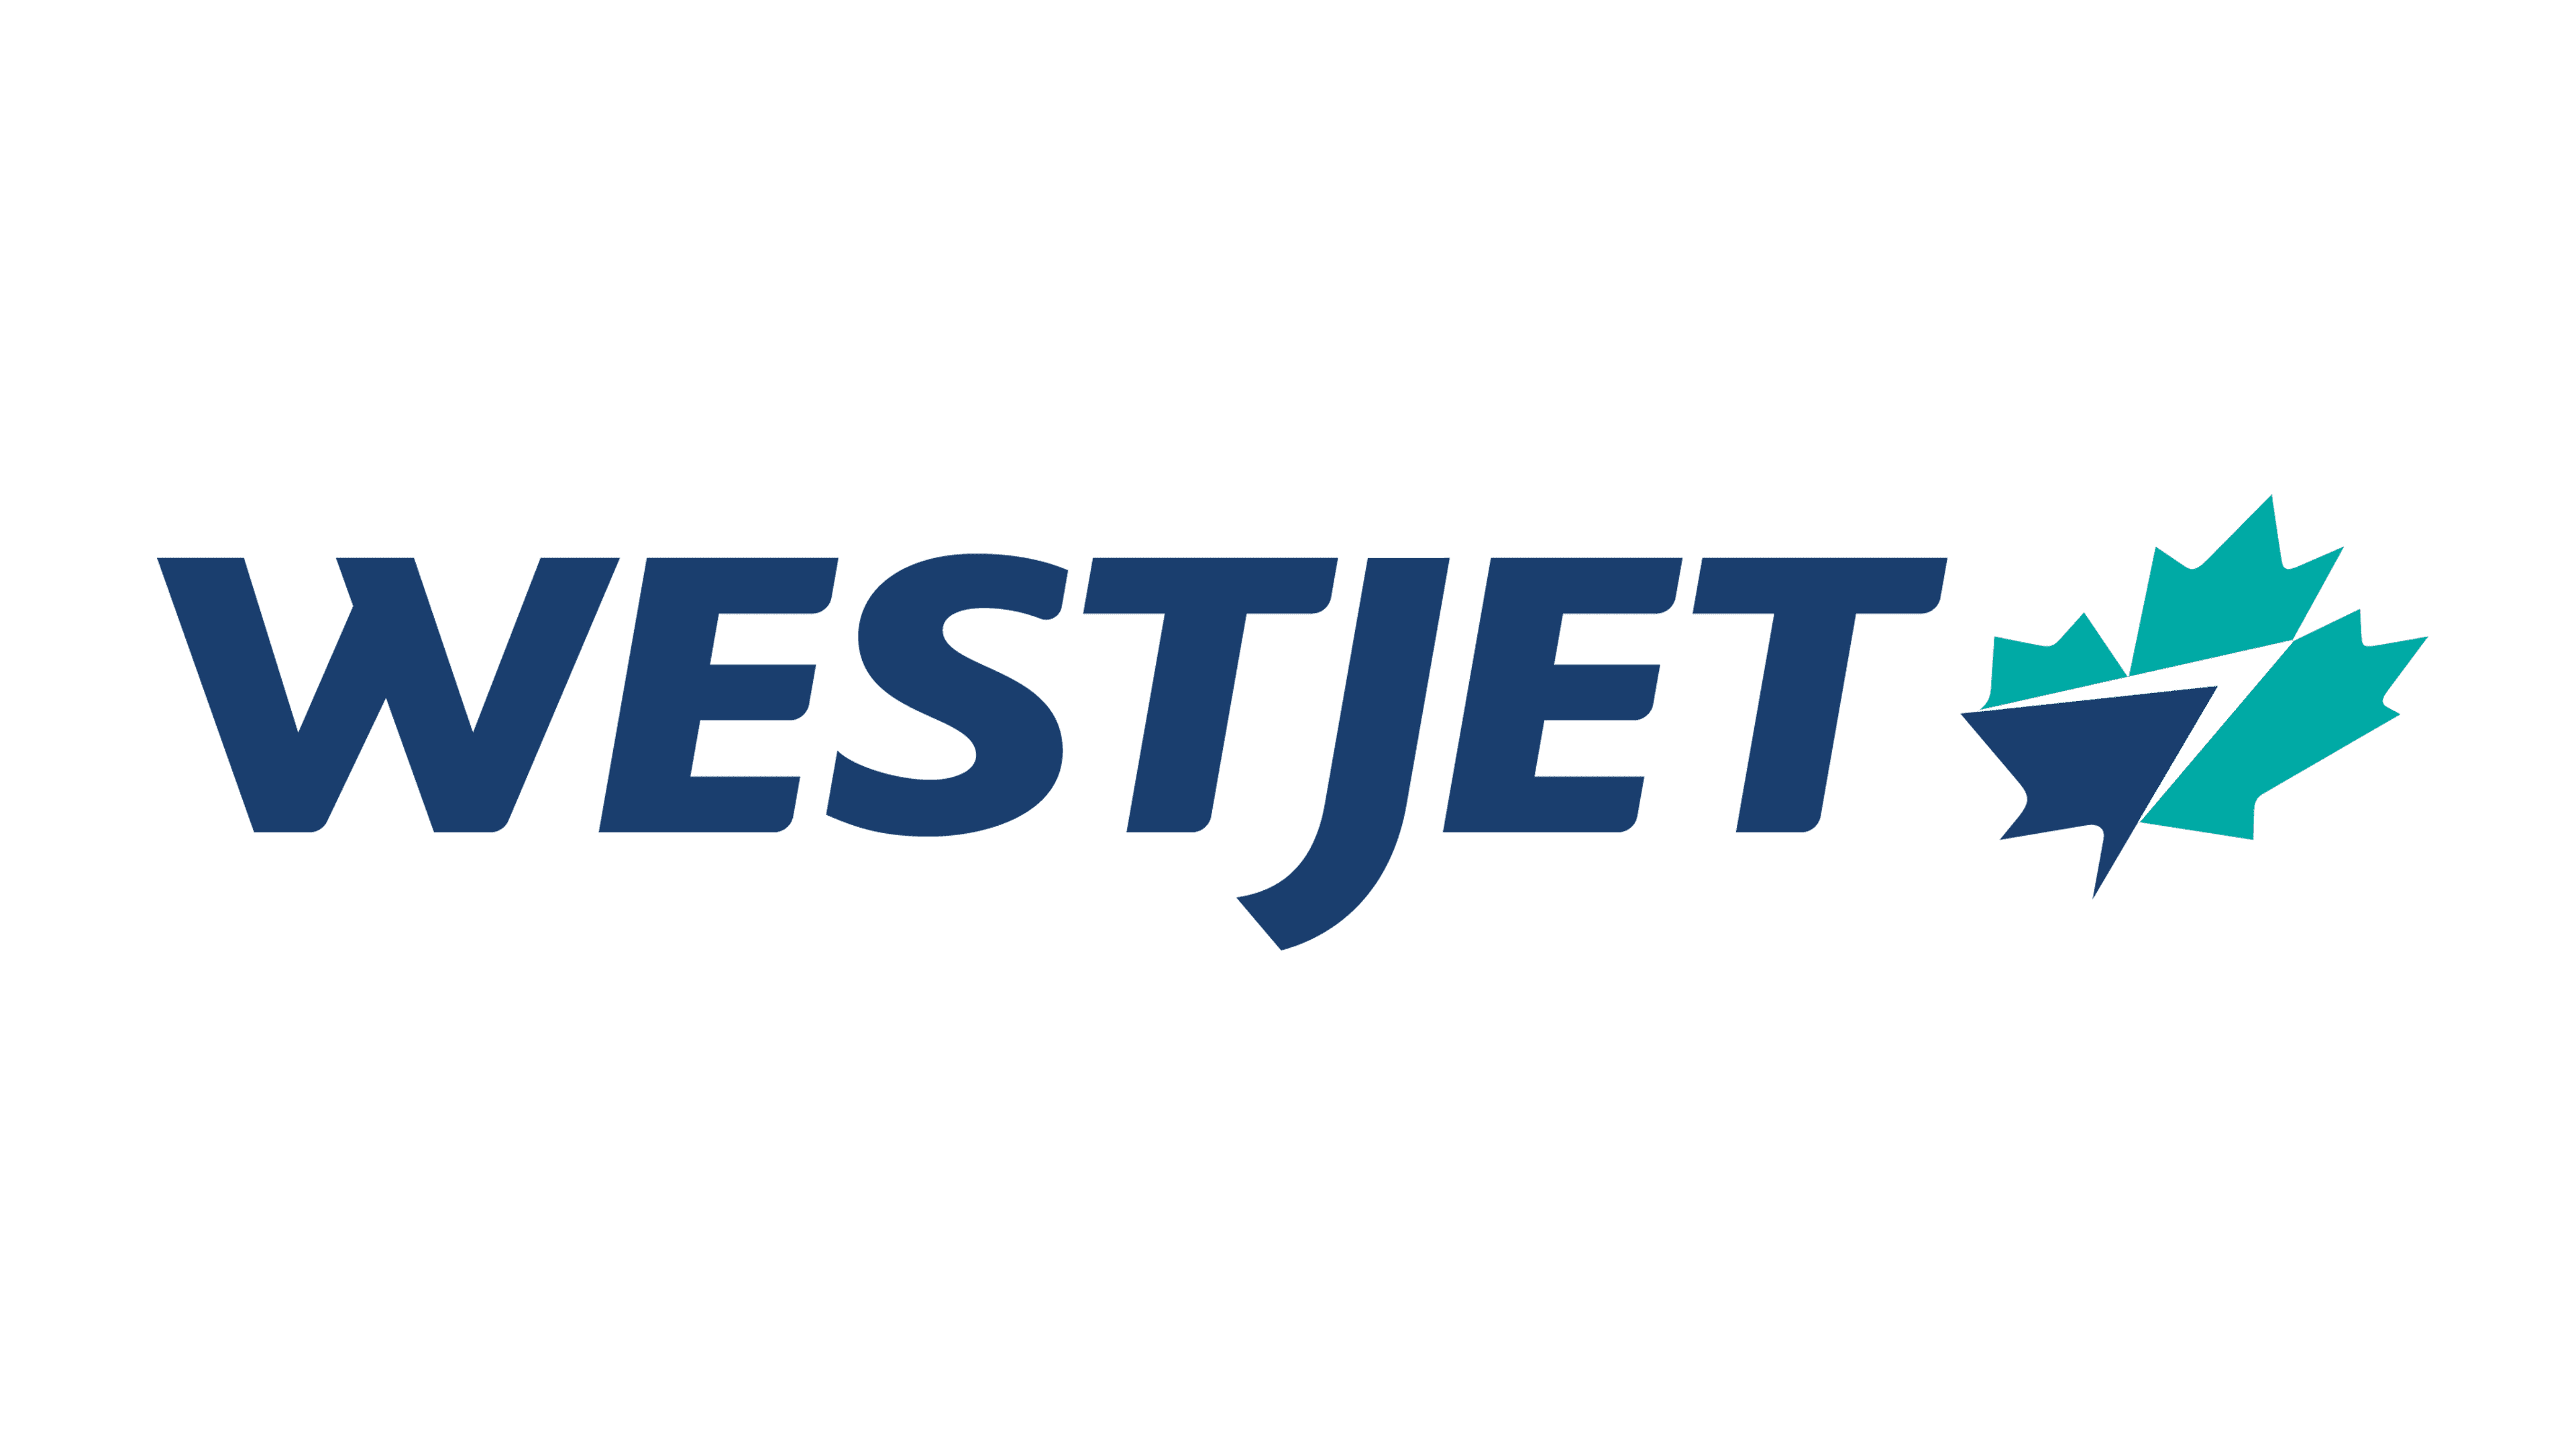 WestJet-Airlines-logo